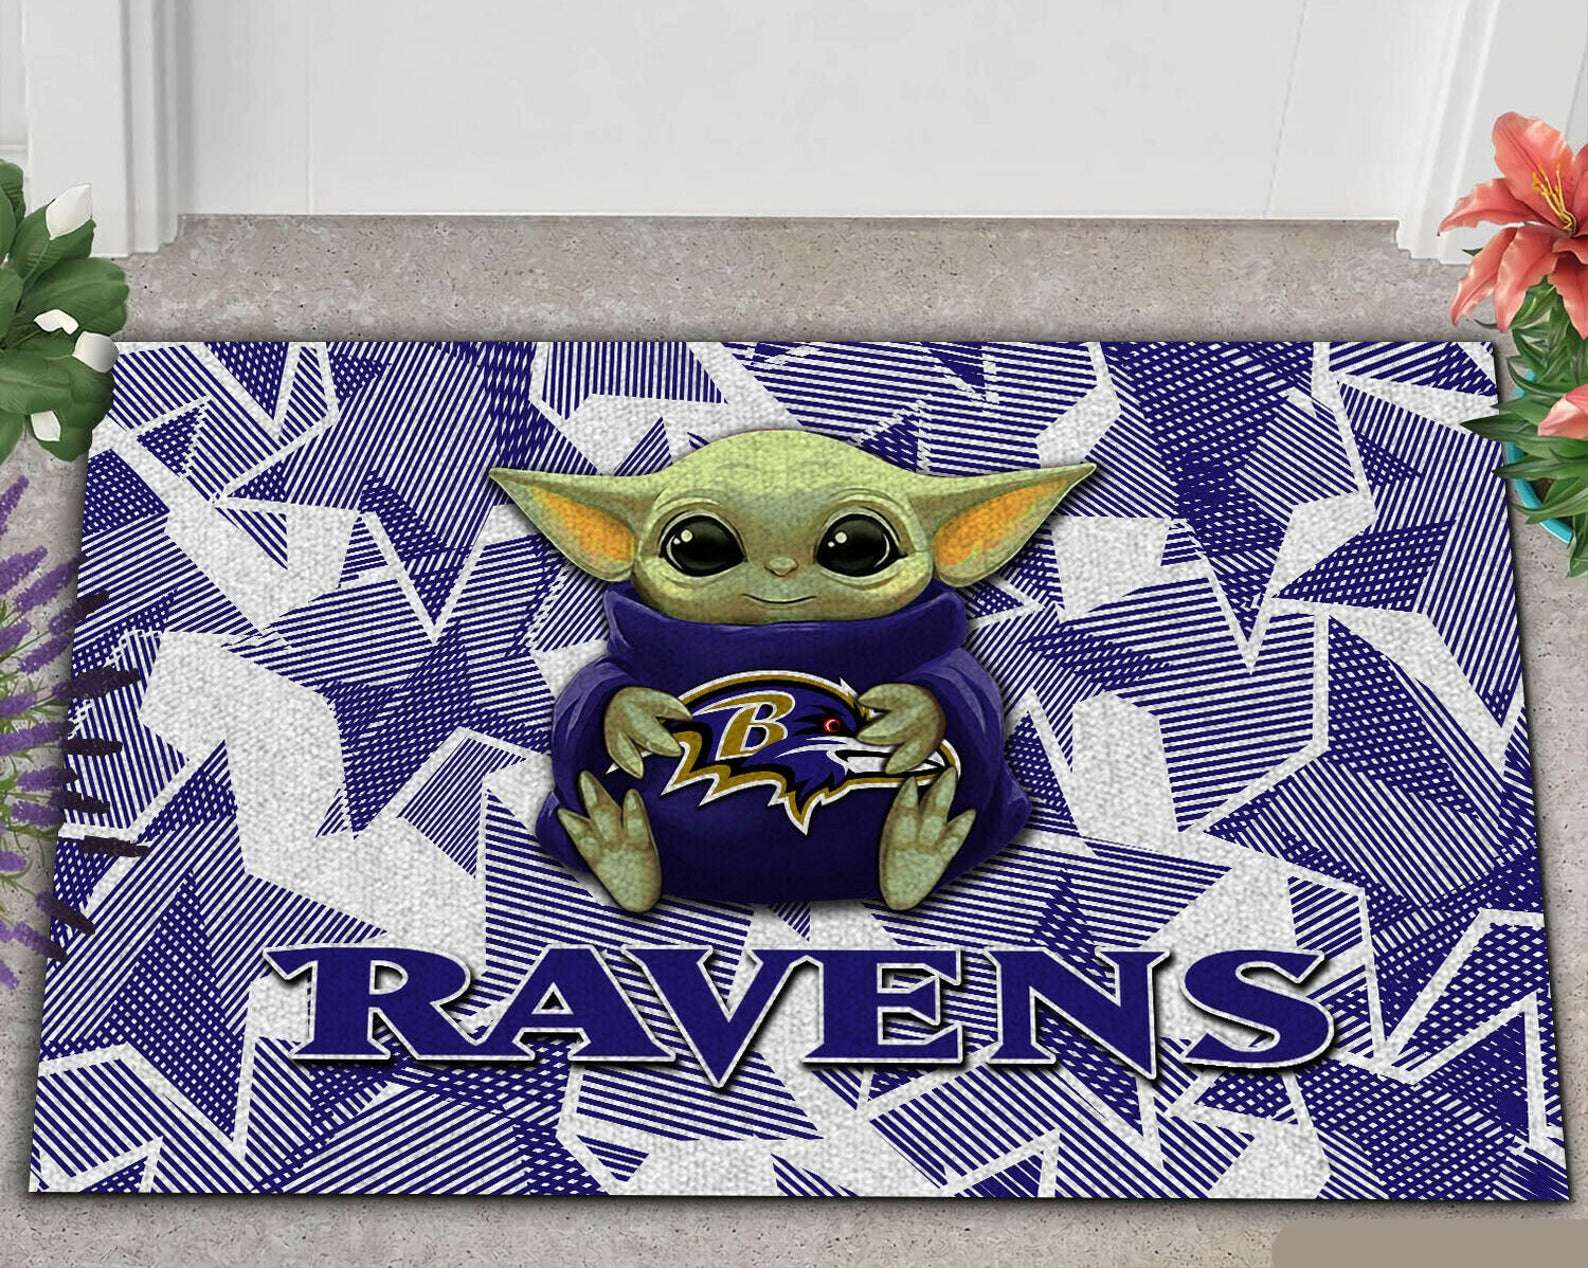 Baltimore Ravens Nfl Fan Gift Doormat